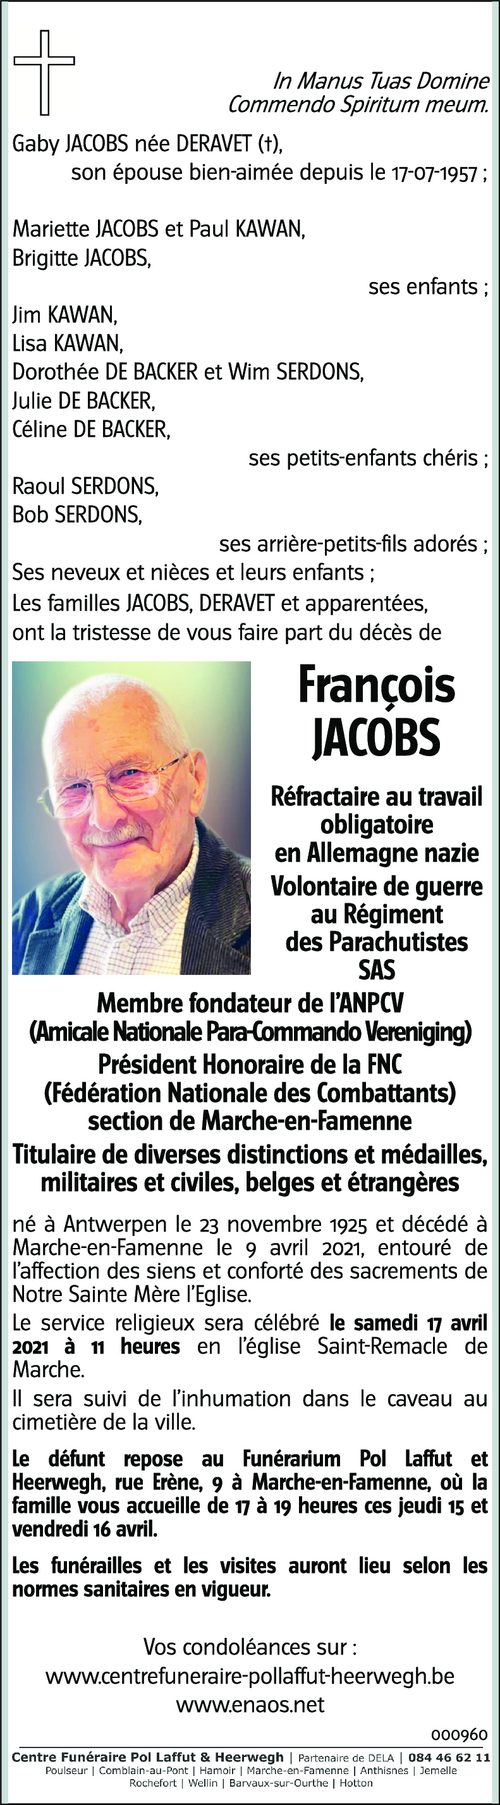 François JACOBS